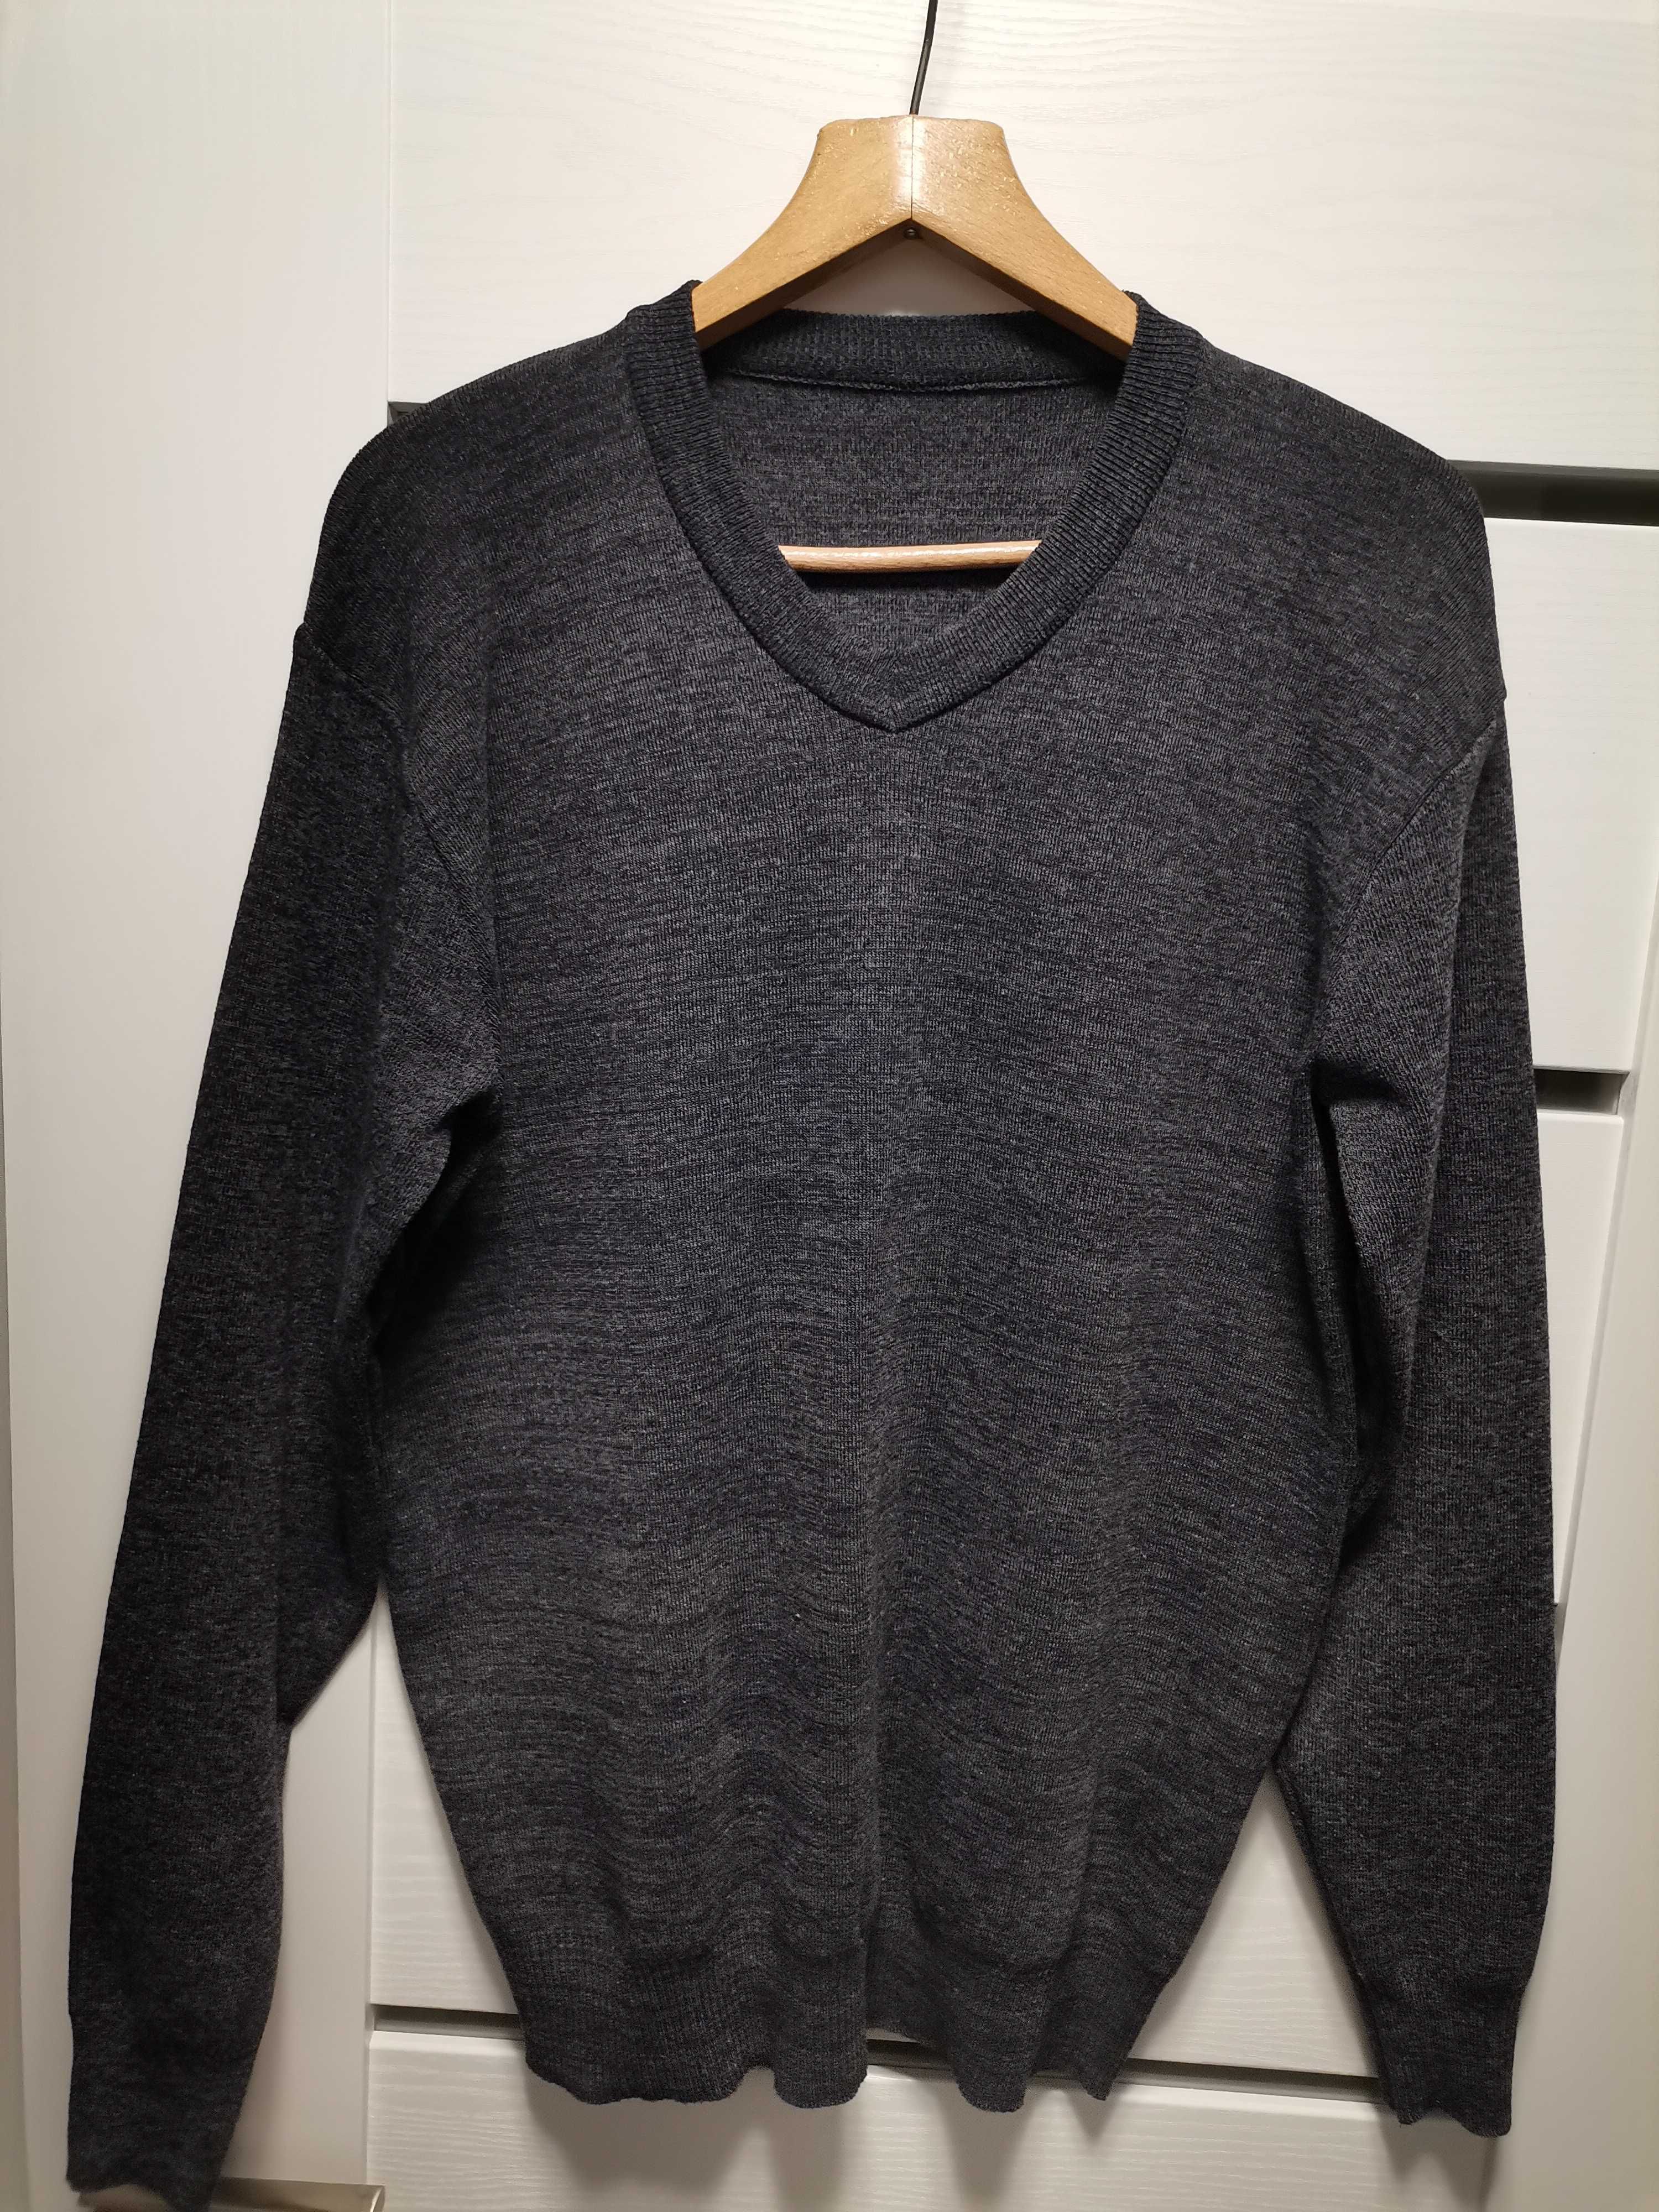 Sprzedam sweter męski, ciepły szaro-popielaty rozmiar XL, jak nowy.